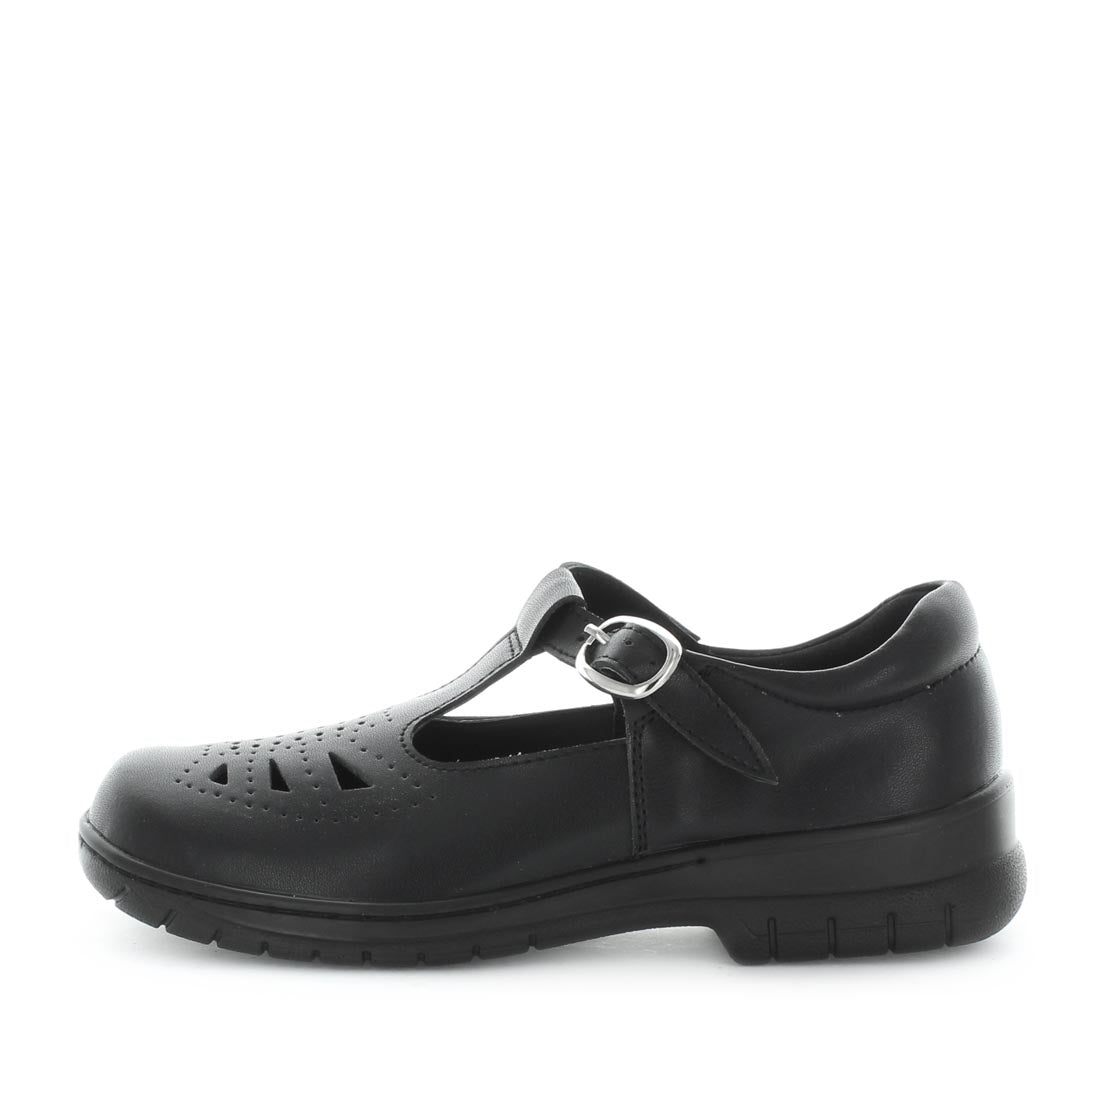 JARRELL by WILDE SCHOOL - iShoes - School Shoes, School Shoes: Junior Boy's, School Shoes: Junior Girl's, School Shoes: Youth - FOOTWEAR-FOOTWEAR